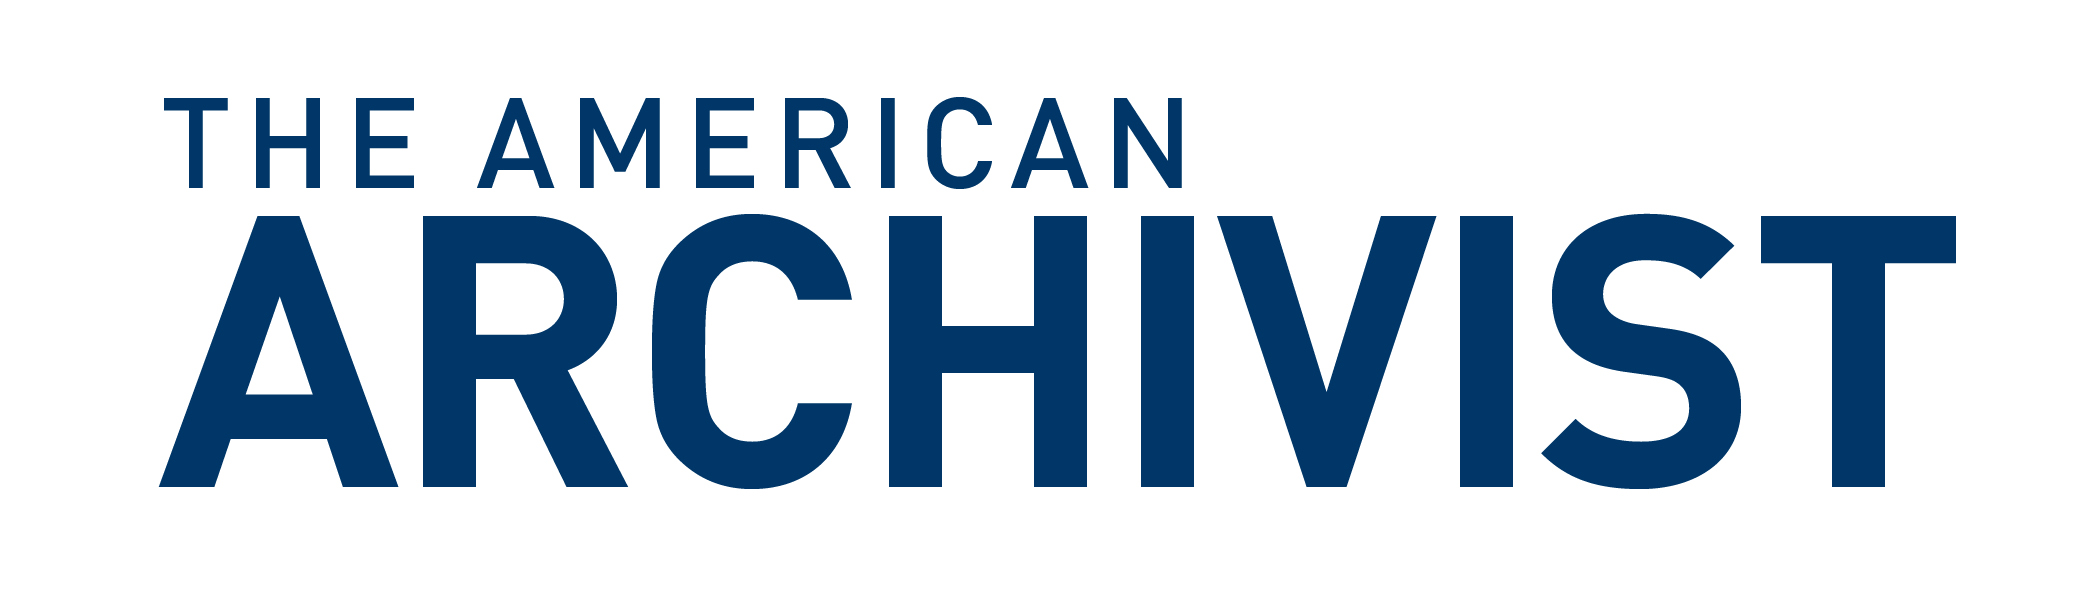 The American Archivist